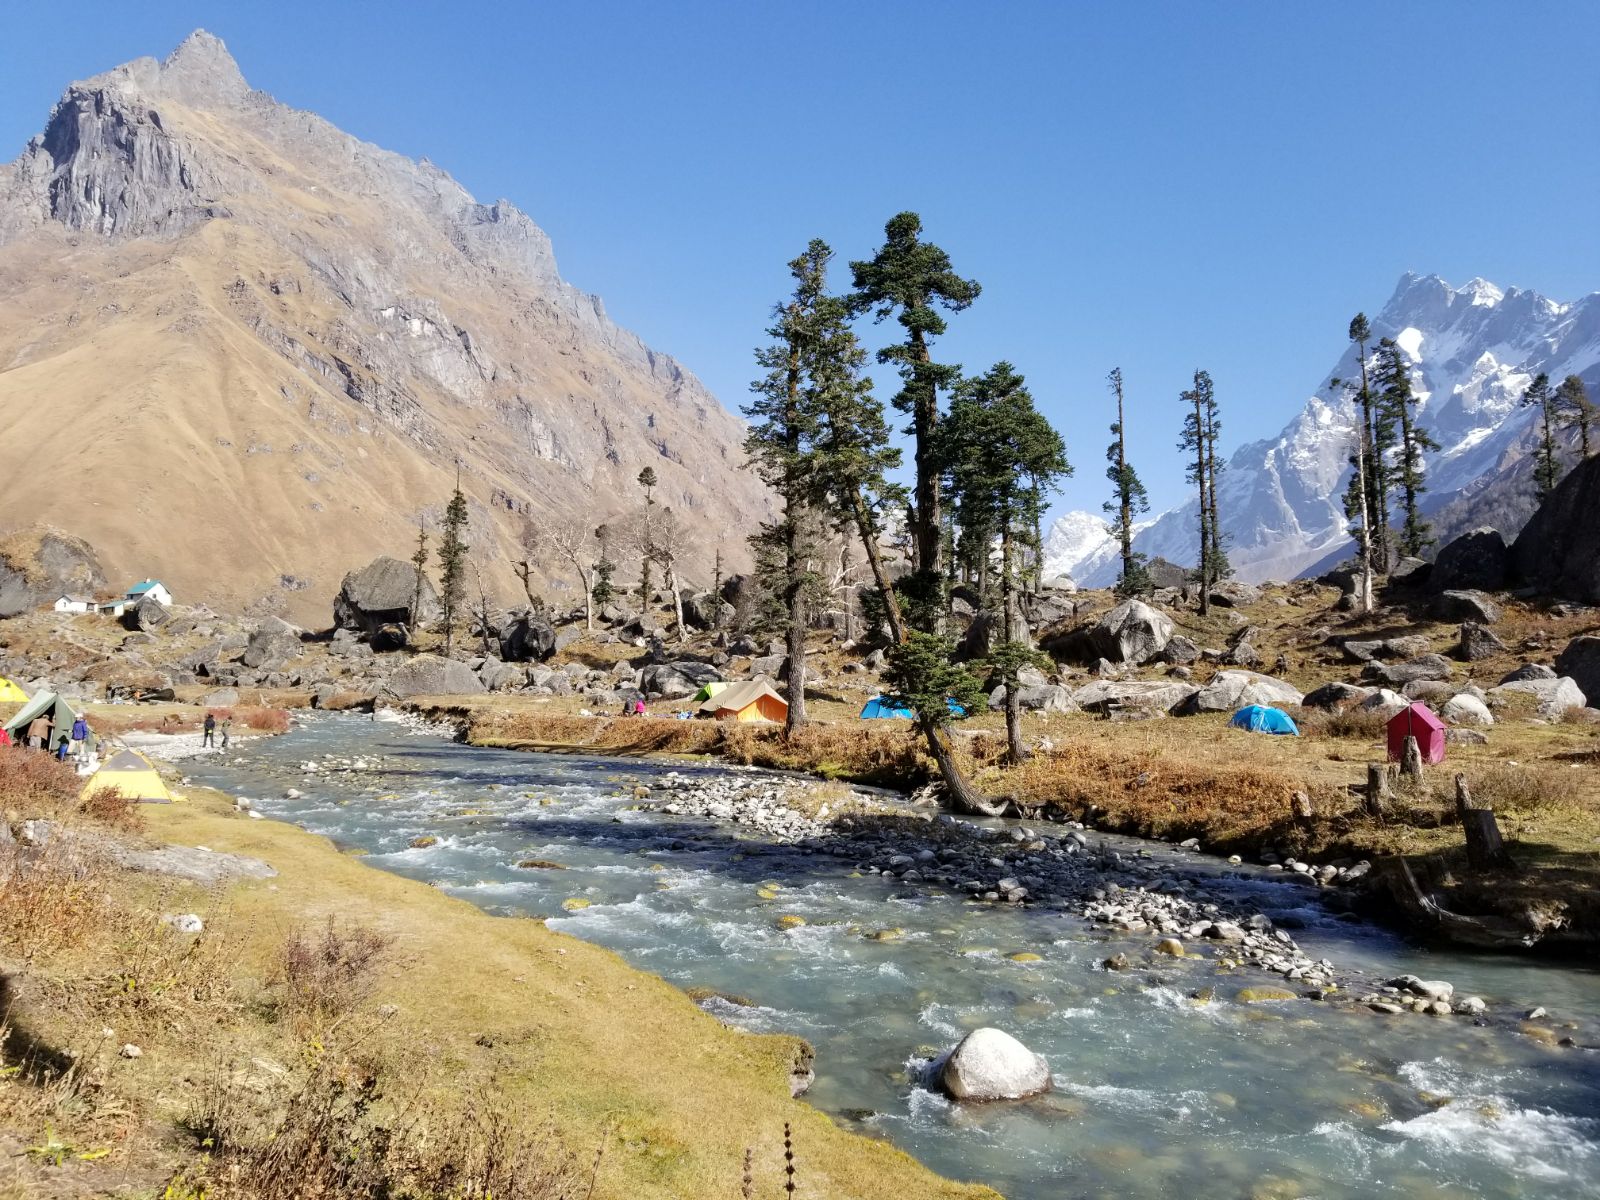 Camping by a glacial stream. Har Ki Doon peak left and Swargarohini Peak right - Himalayan Institute